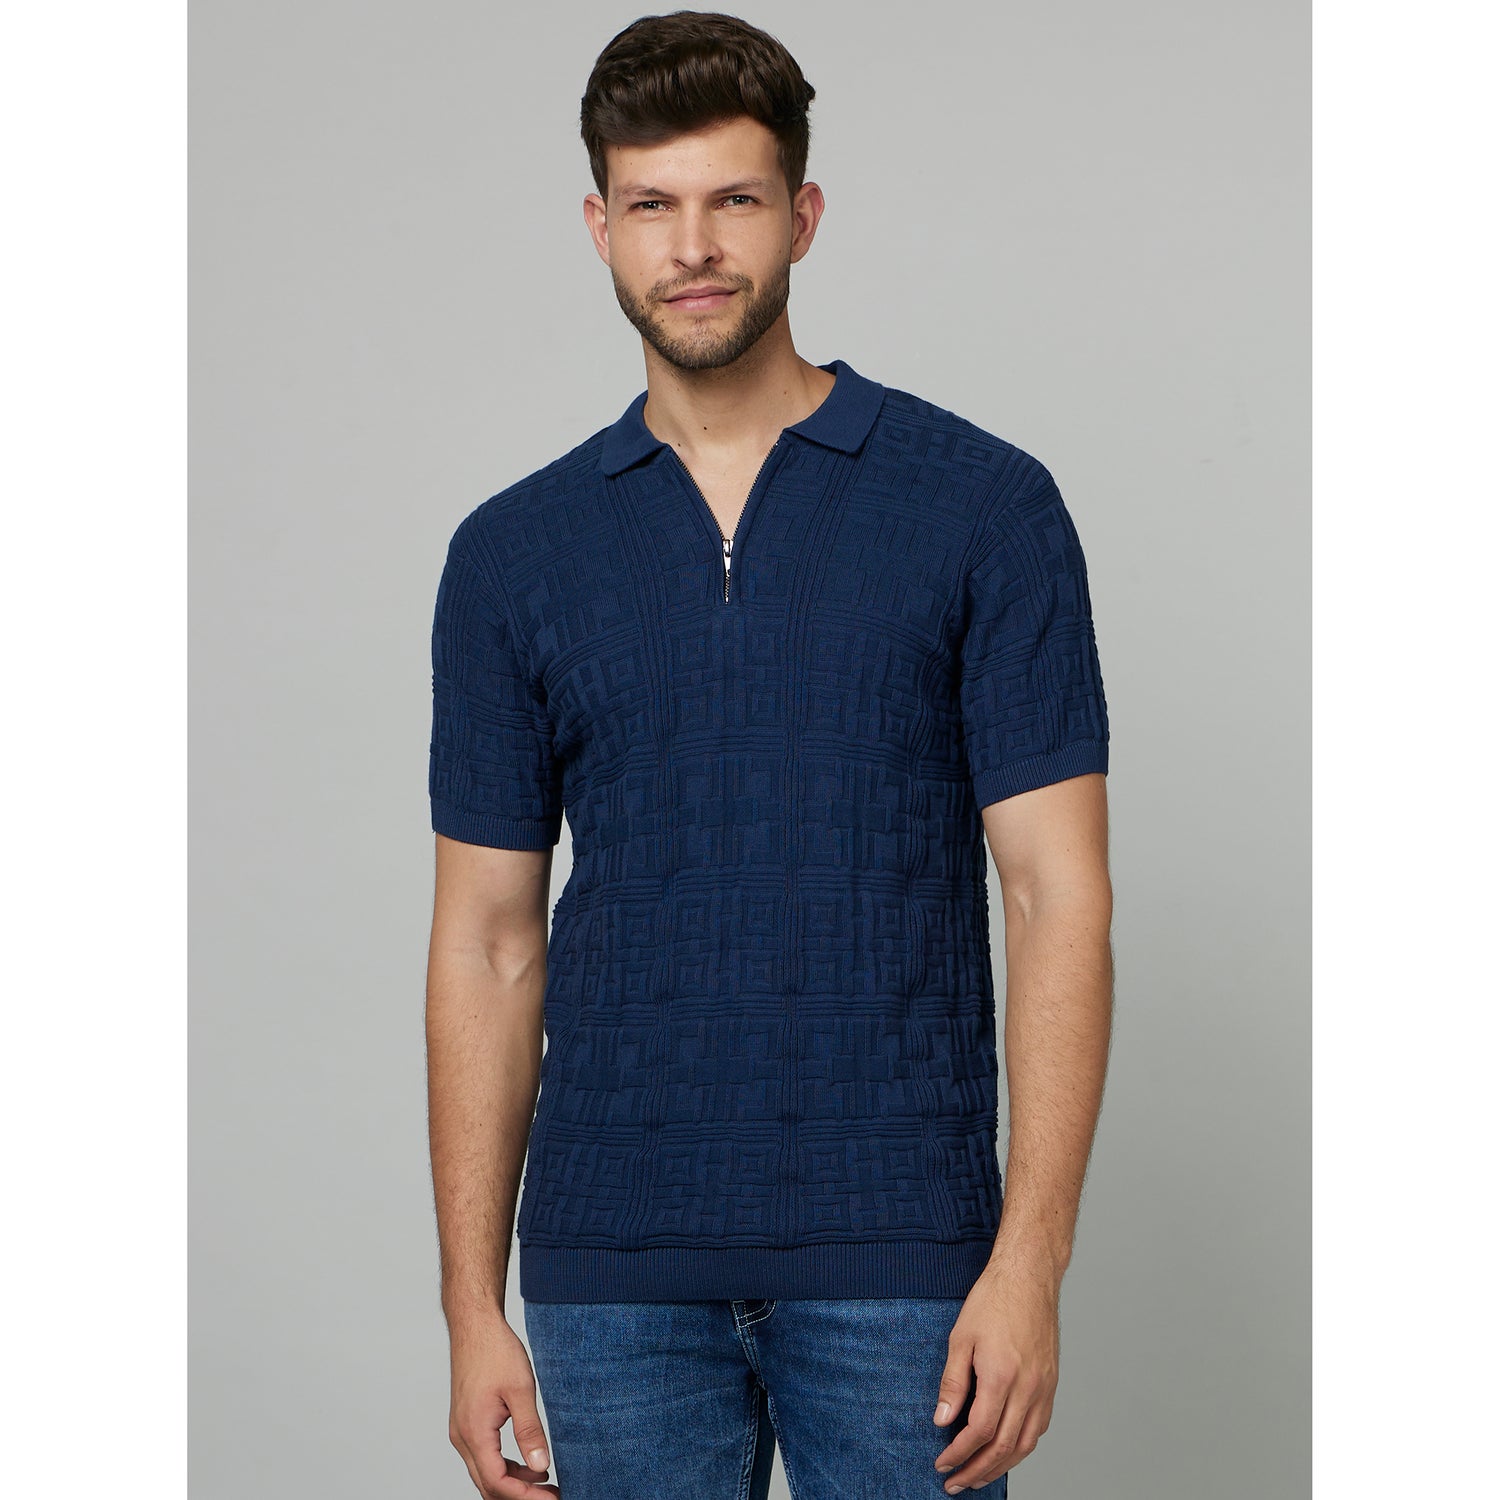 Blue Self Design Polo Collar Cotton T-shirt (FEMAZE)